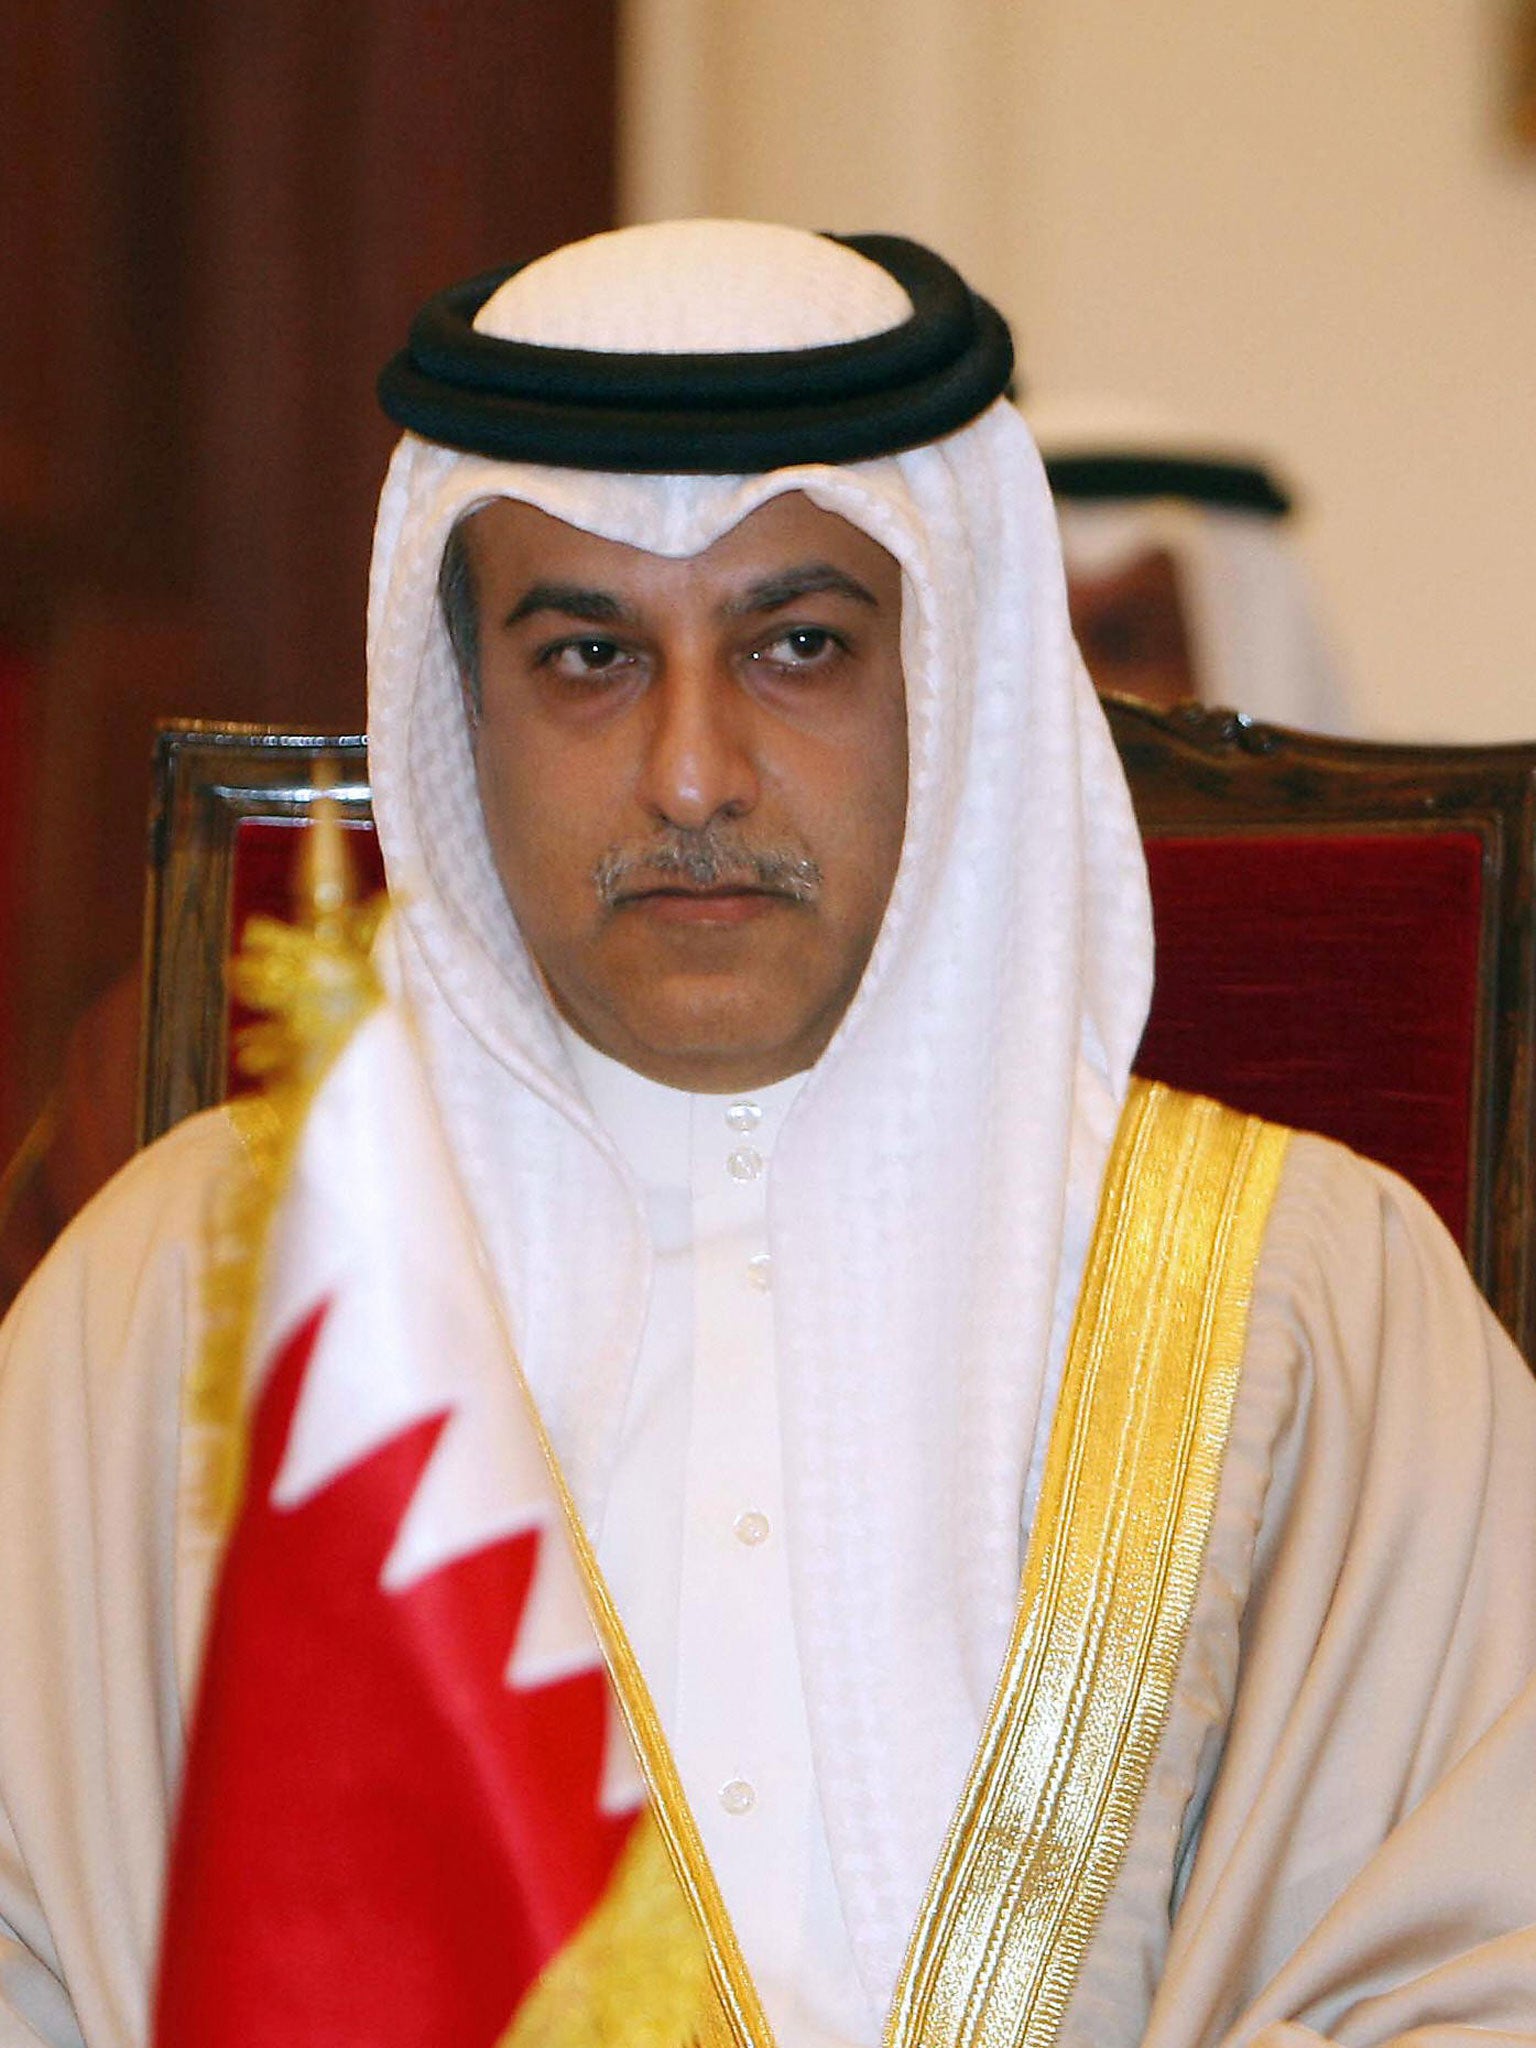 Bahraini Sheikh Salman bin Ibrahim al-Khalifa